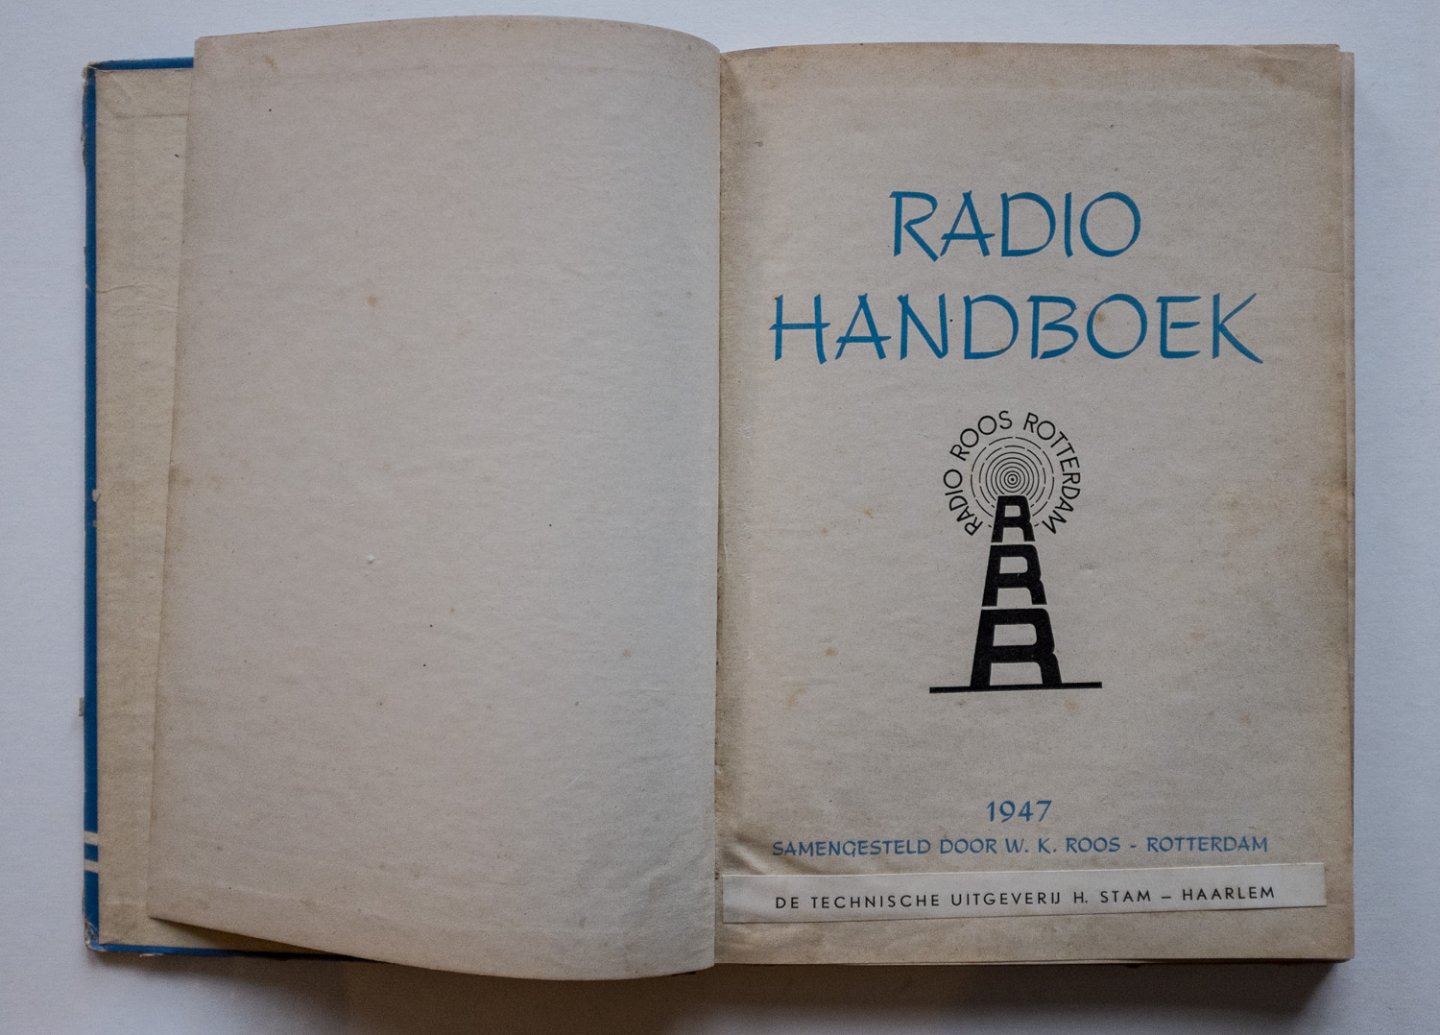 Roos, W.K. - Radio handboek